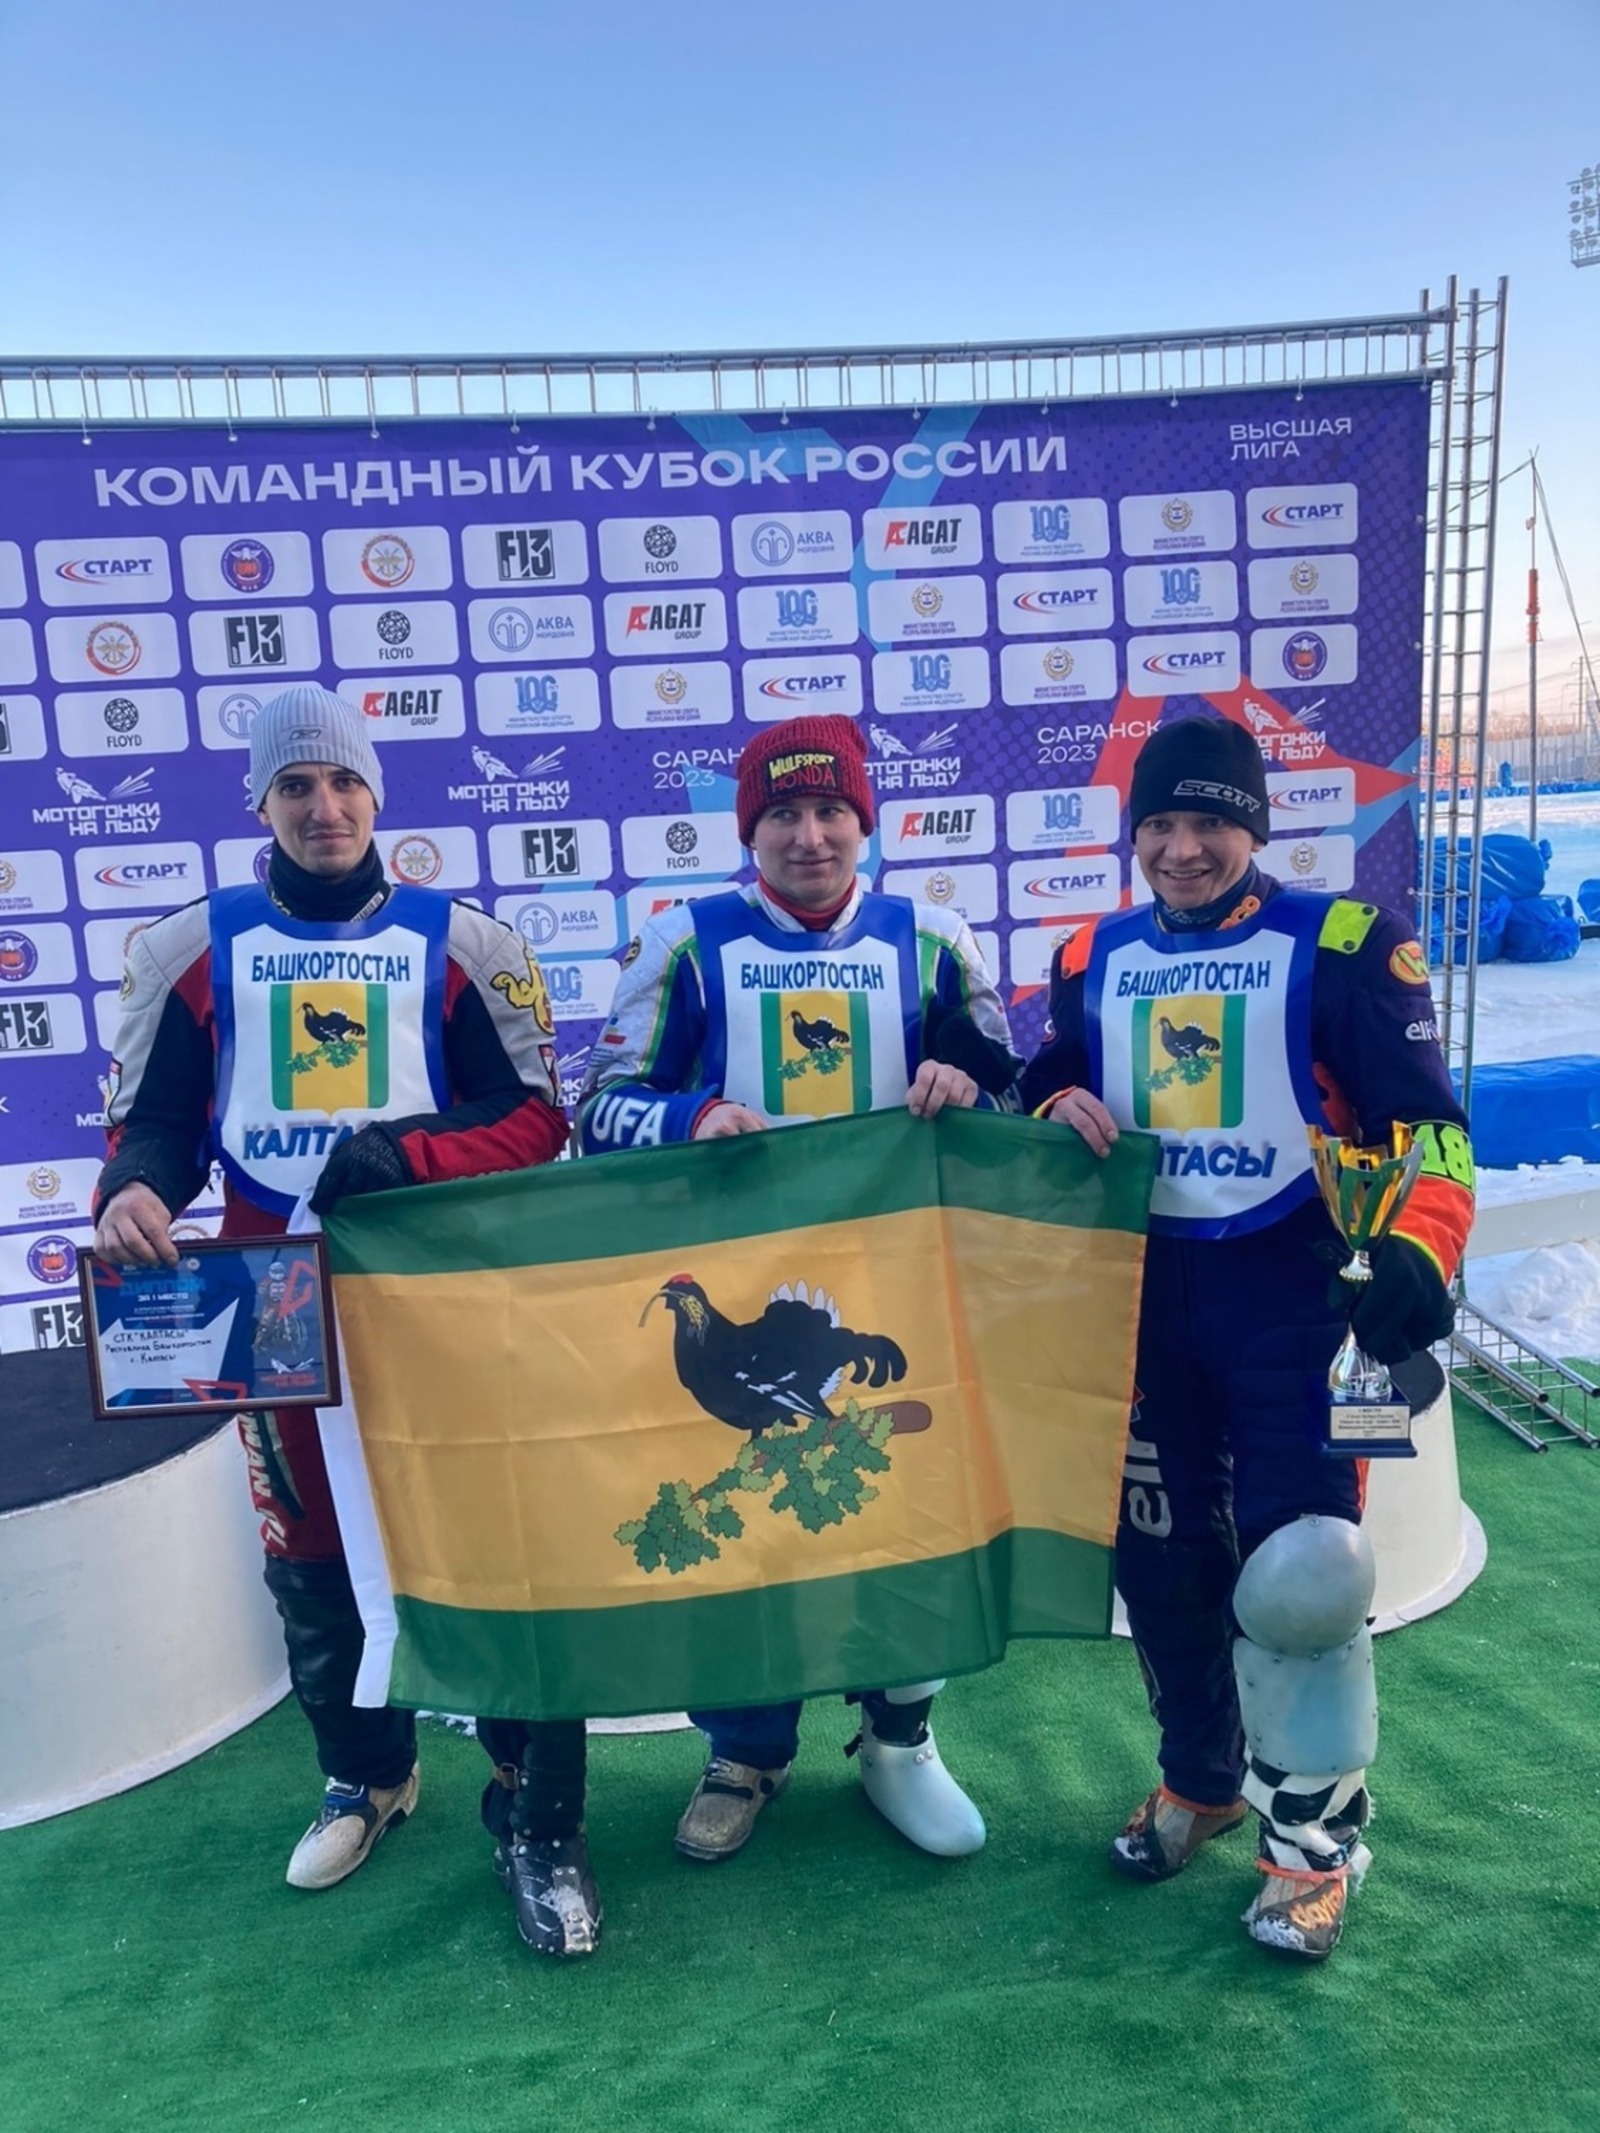 Спортсмены из Башкирии победили в командном Кубке России по ледовому спидвею